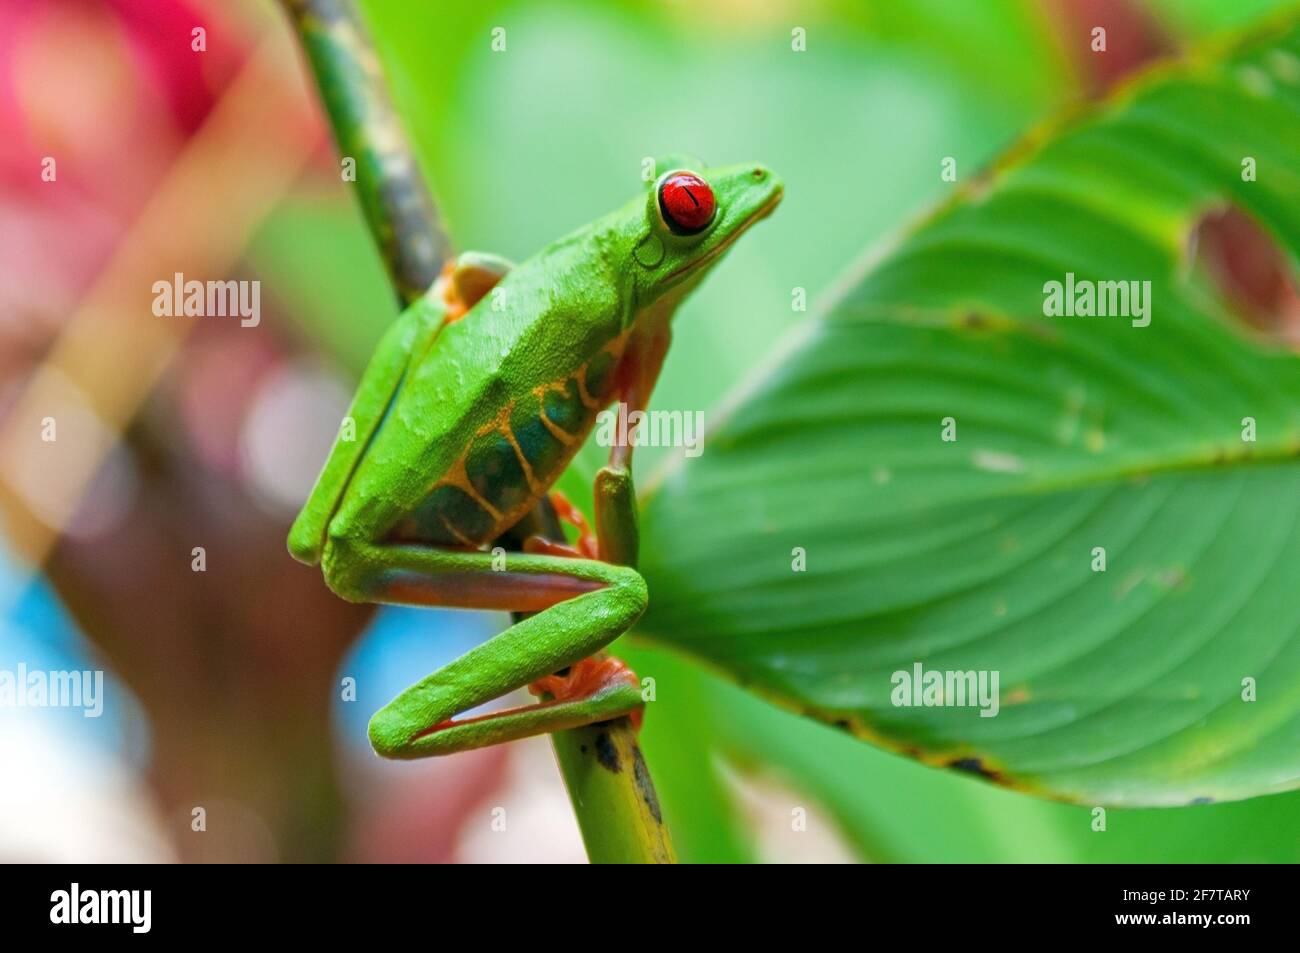 Grenouille d'arbre à yeux rouges ou grenouille à feuilles gaudies (Agalychnis callidryas) sur branche, parc national de Tortuguero, Costa Rica. Concentrez-vous sur les yeux. Banque D'Images